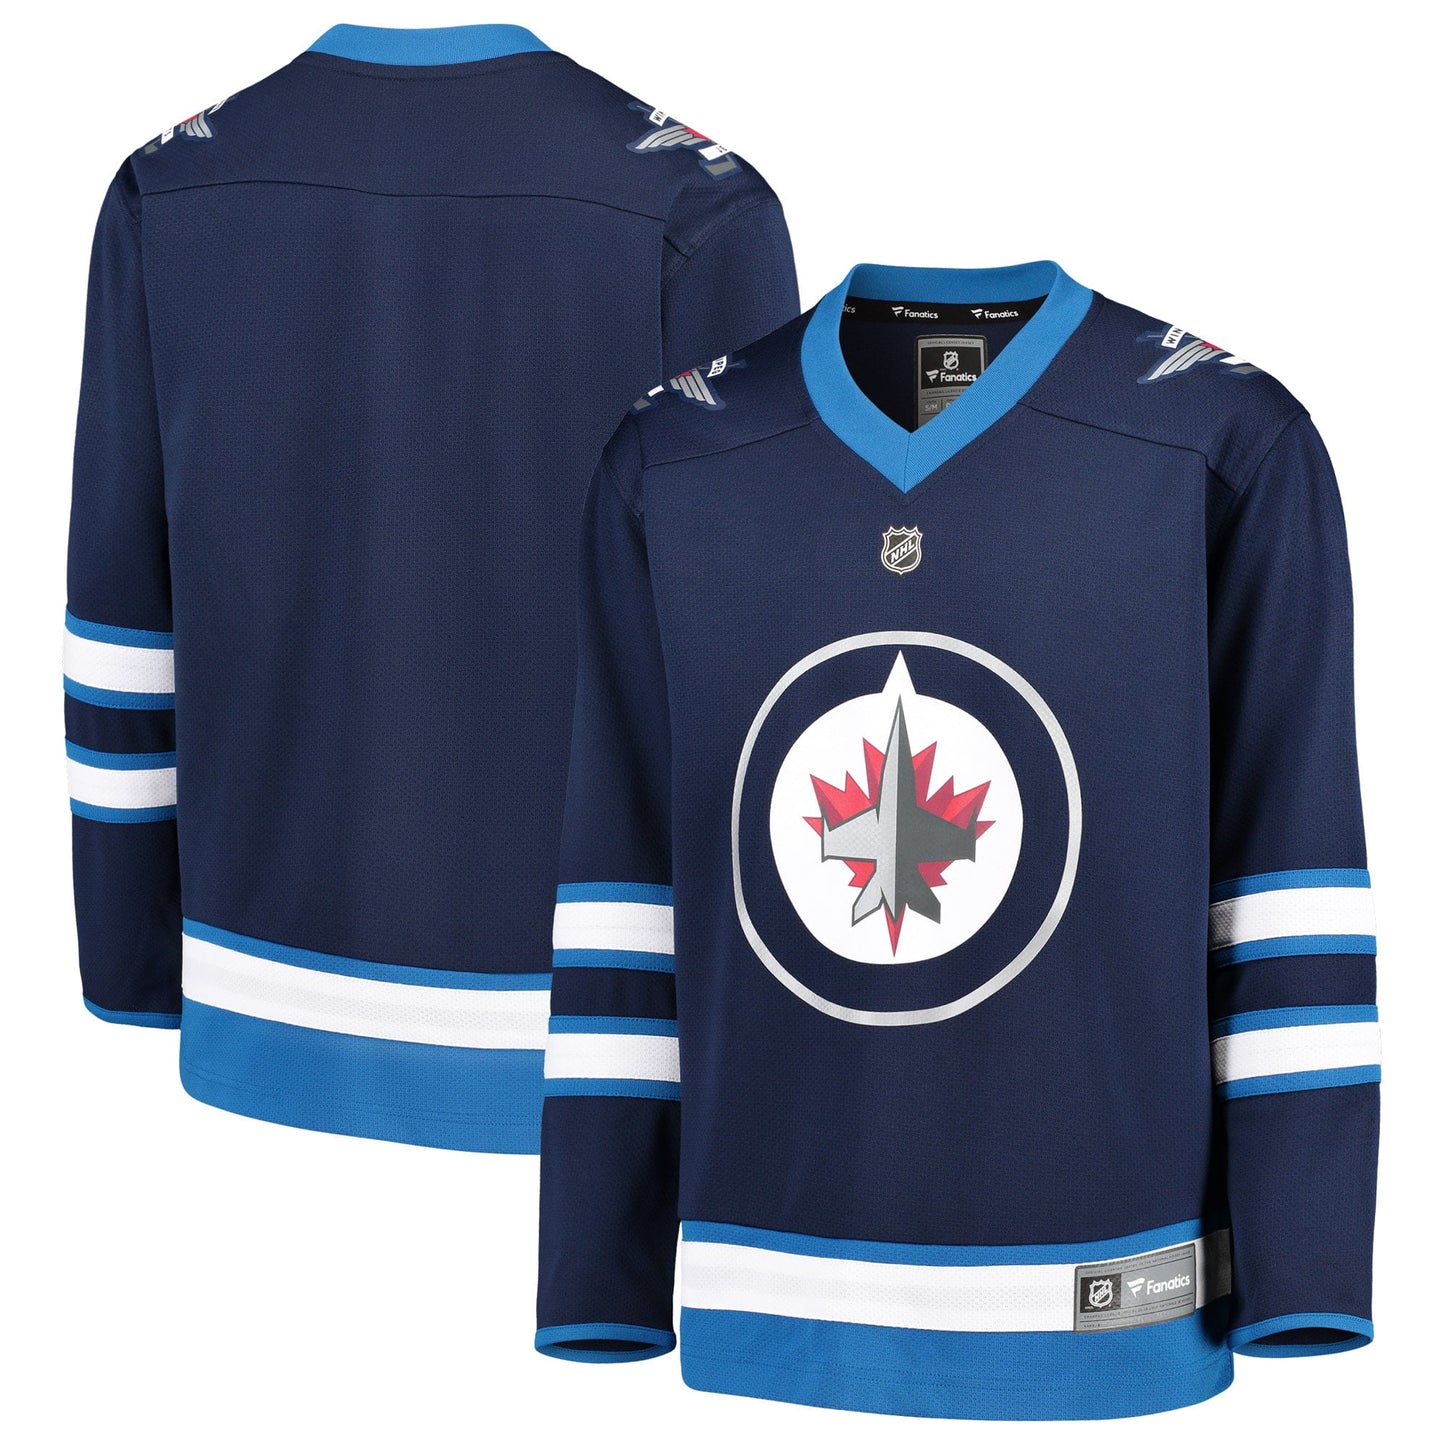 Youth Fanatics Branded Blue Winnipeg Jets Home Replica Blank Jersey